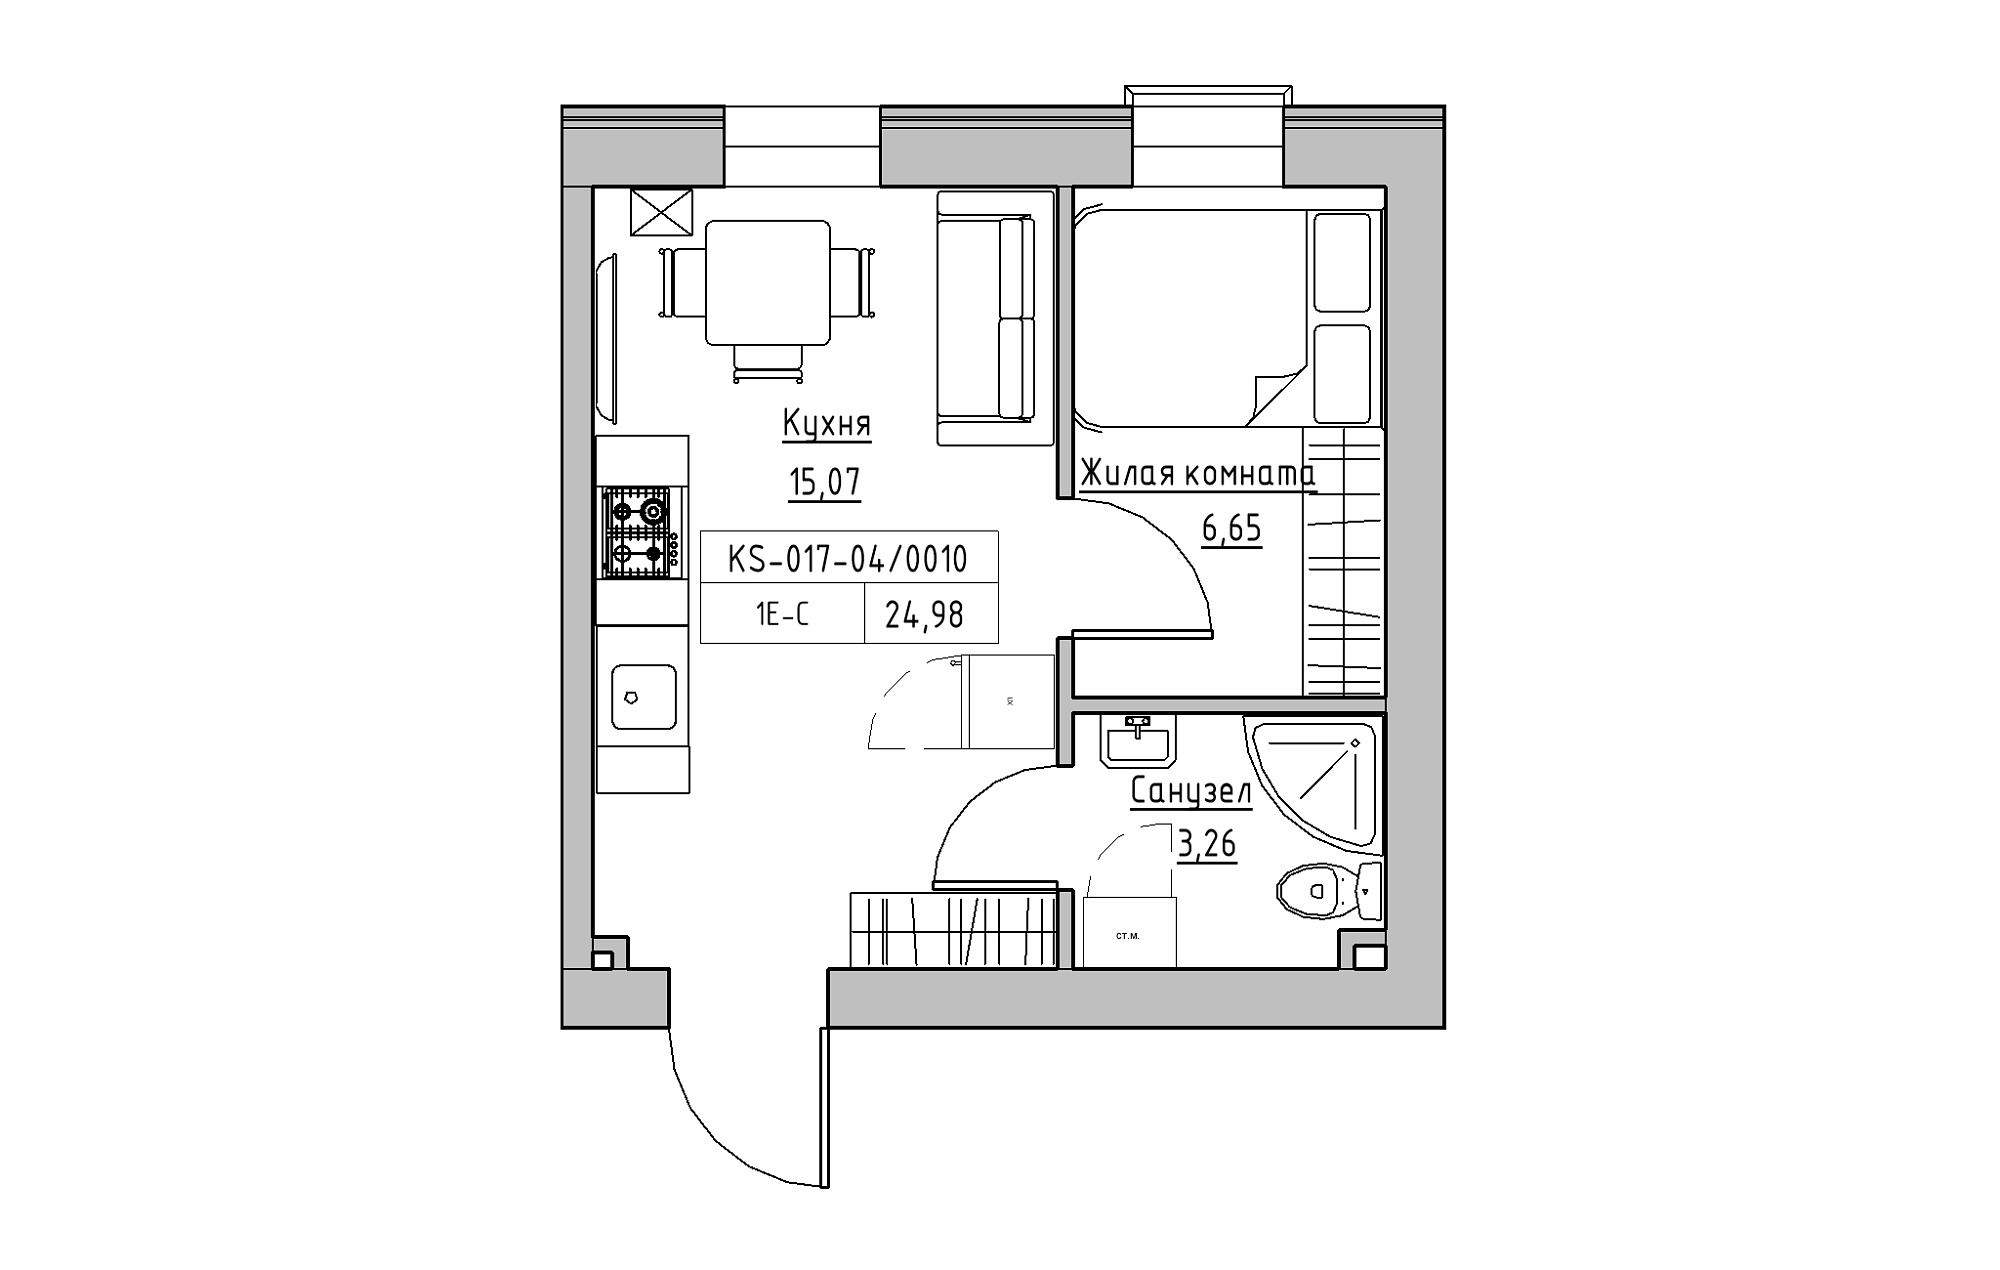 Планування 1-к квартира площею 24.98м2, KS-017-04/0010.